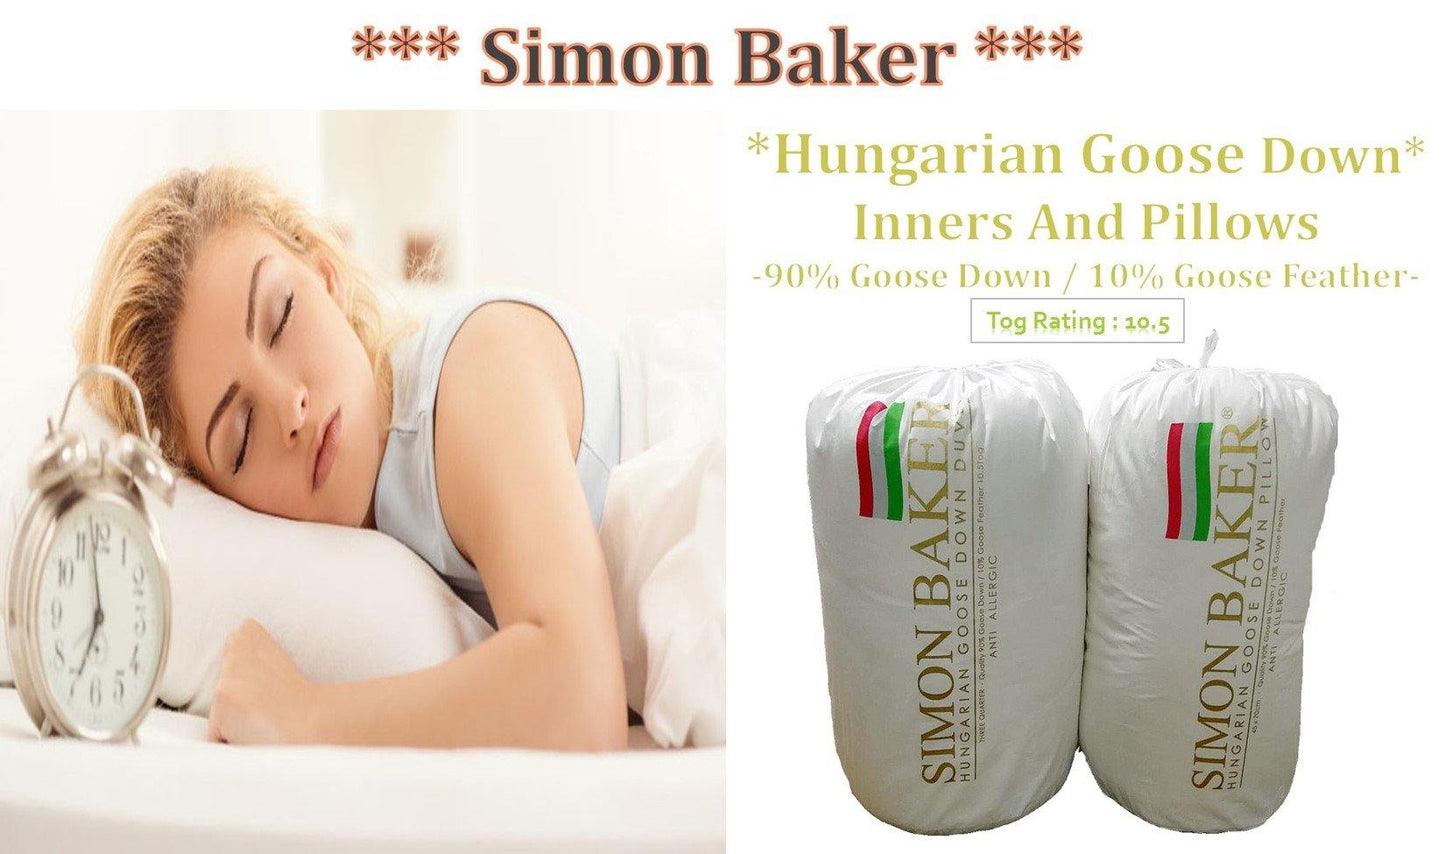 Simon Baker | Hungarian Goose Down Duvet Inner Queen (90/10)